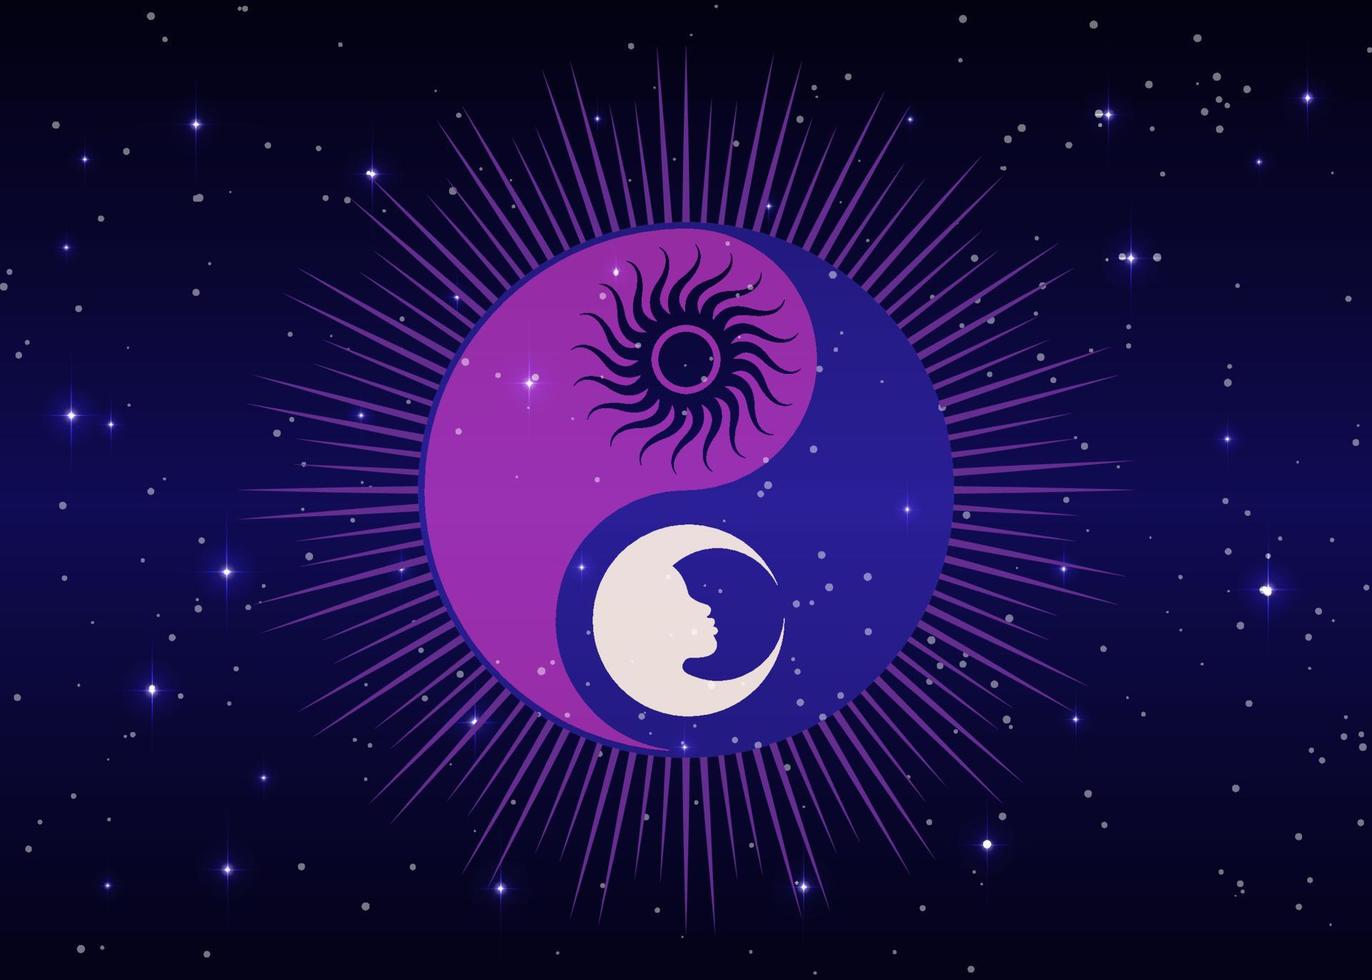 sol místico e design do logotipo sagrado da lua, dia e noite. símbolo zen. ying yang signo de harmonia e equilíbrio. ilustração vetorial colorida isolada no fundo azul estrelado da galáxia vetor